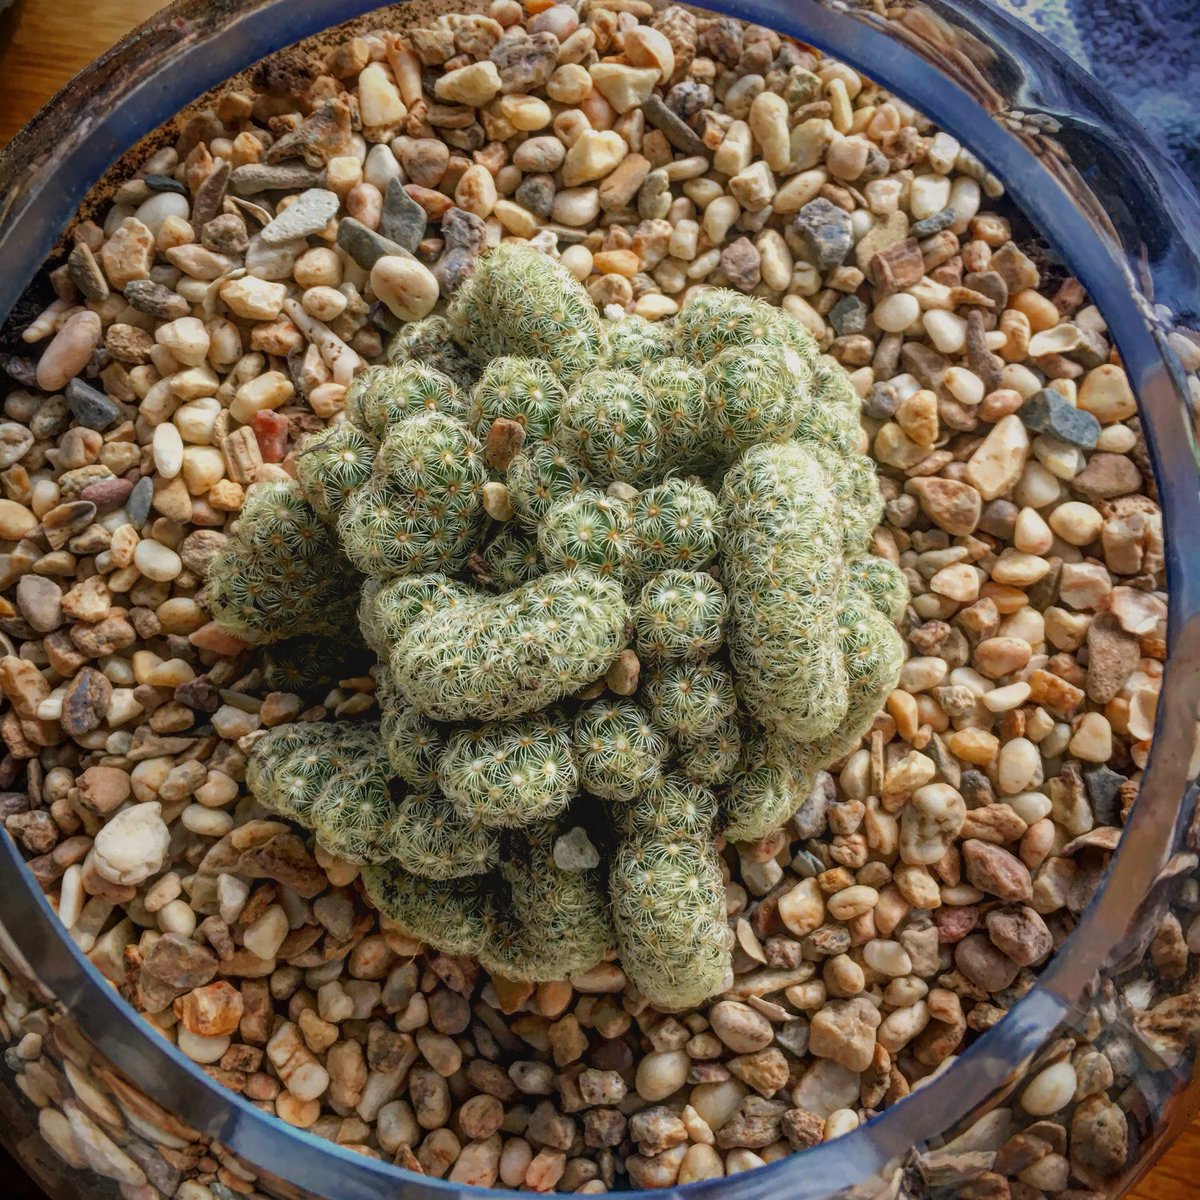 I got a brain.... Cactus that is #Cactus #braincactus